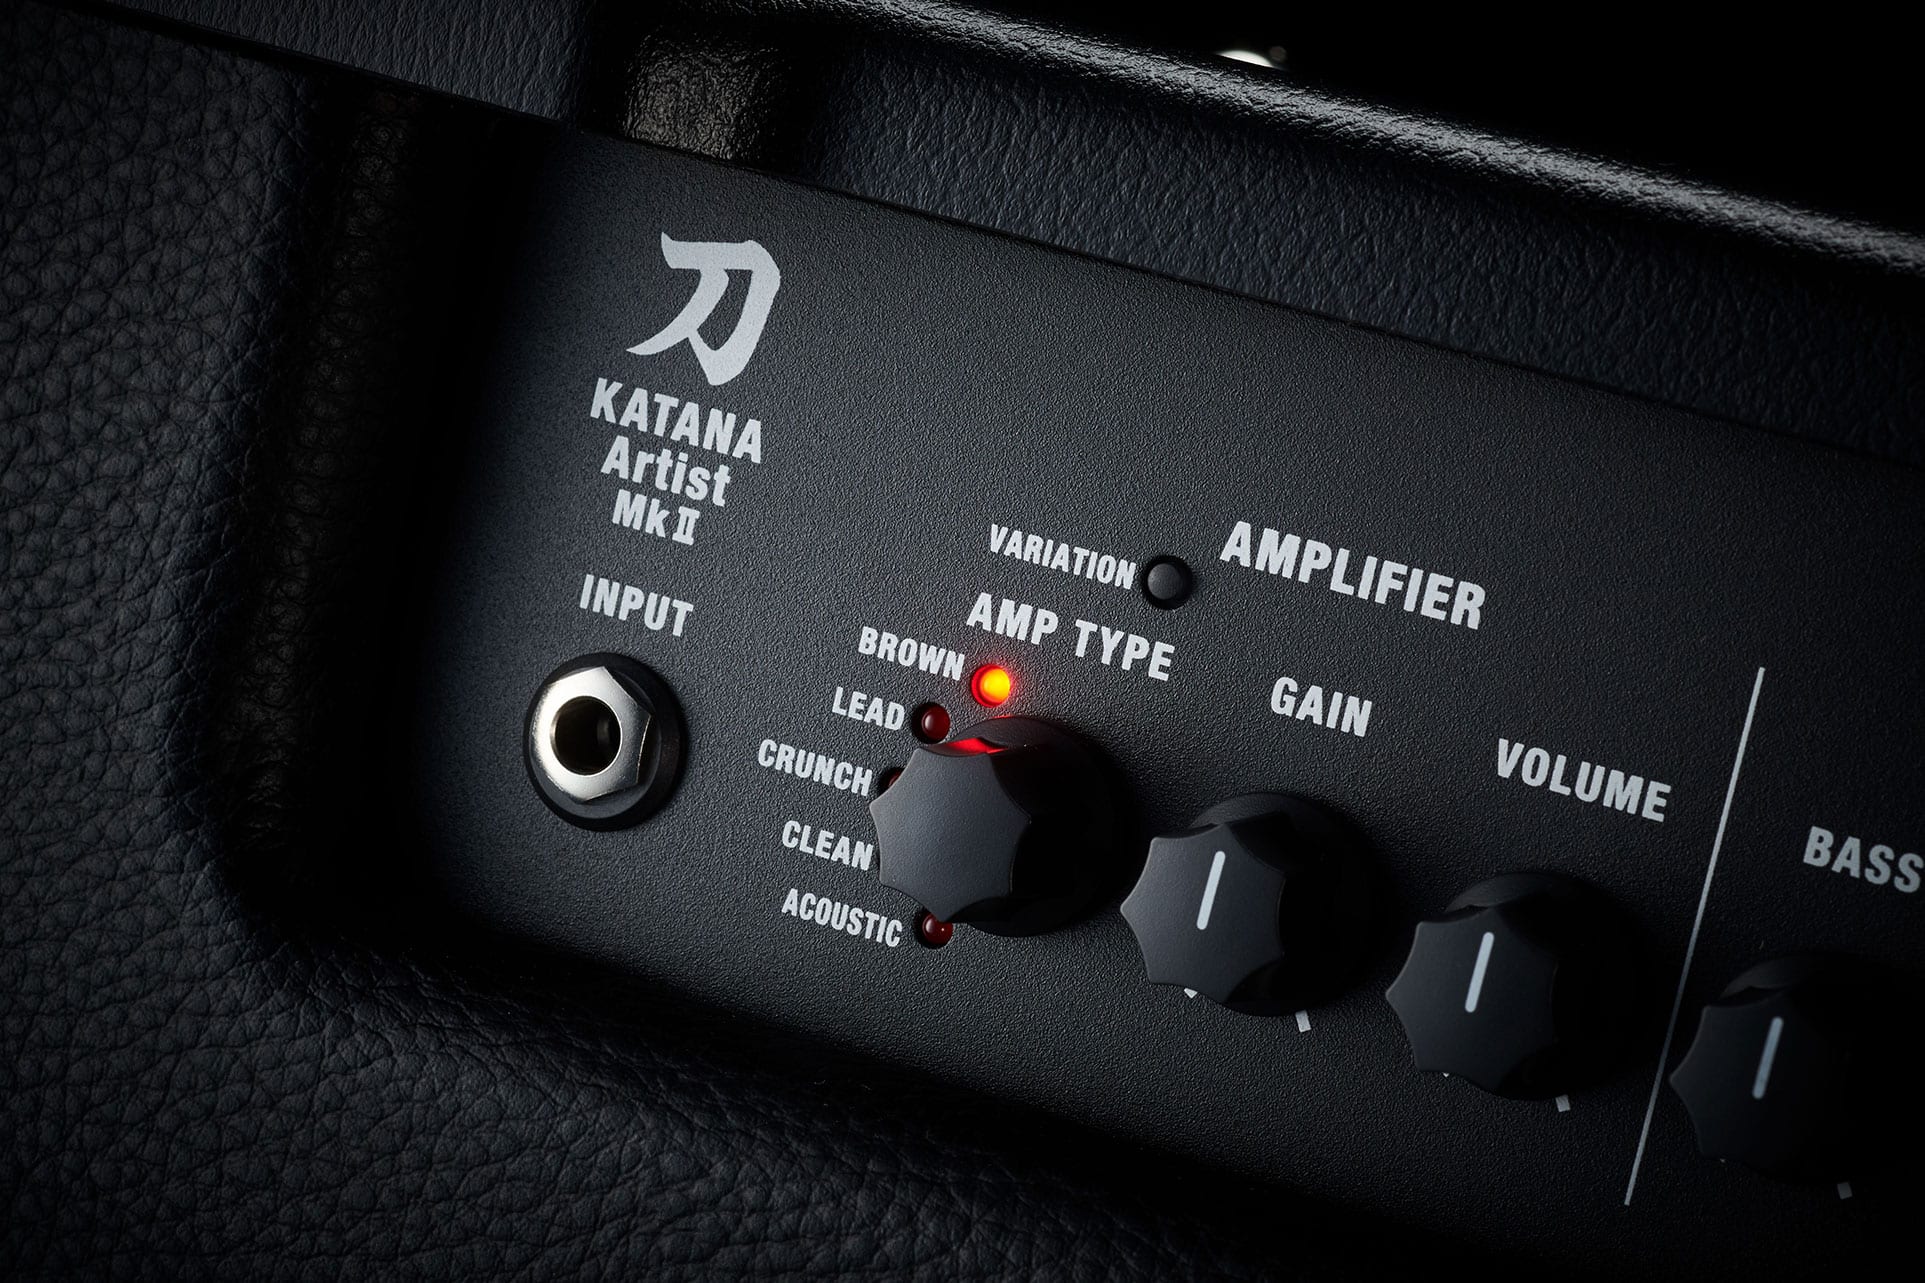 Boss Katana-Artist MKII new amp variations switch